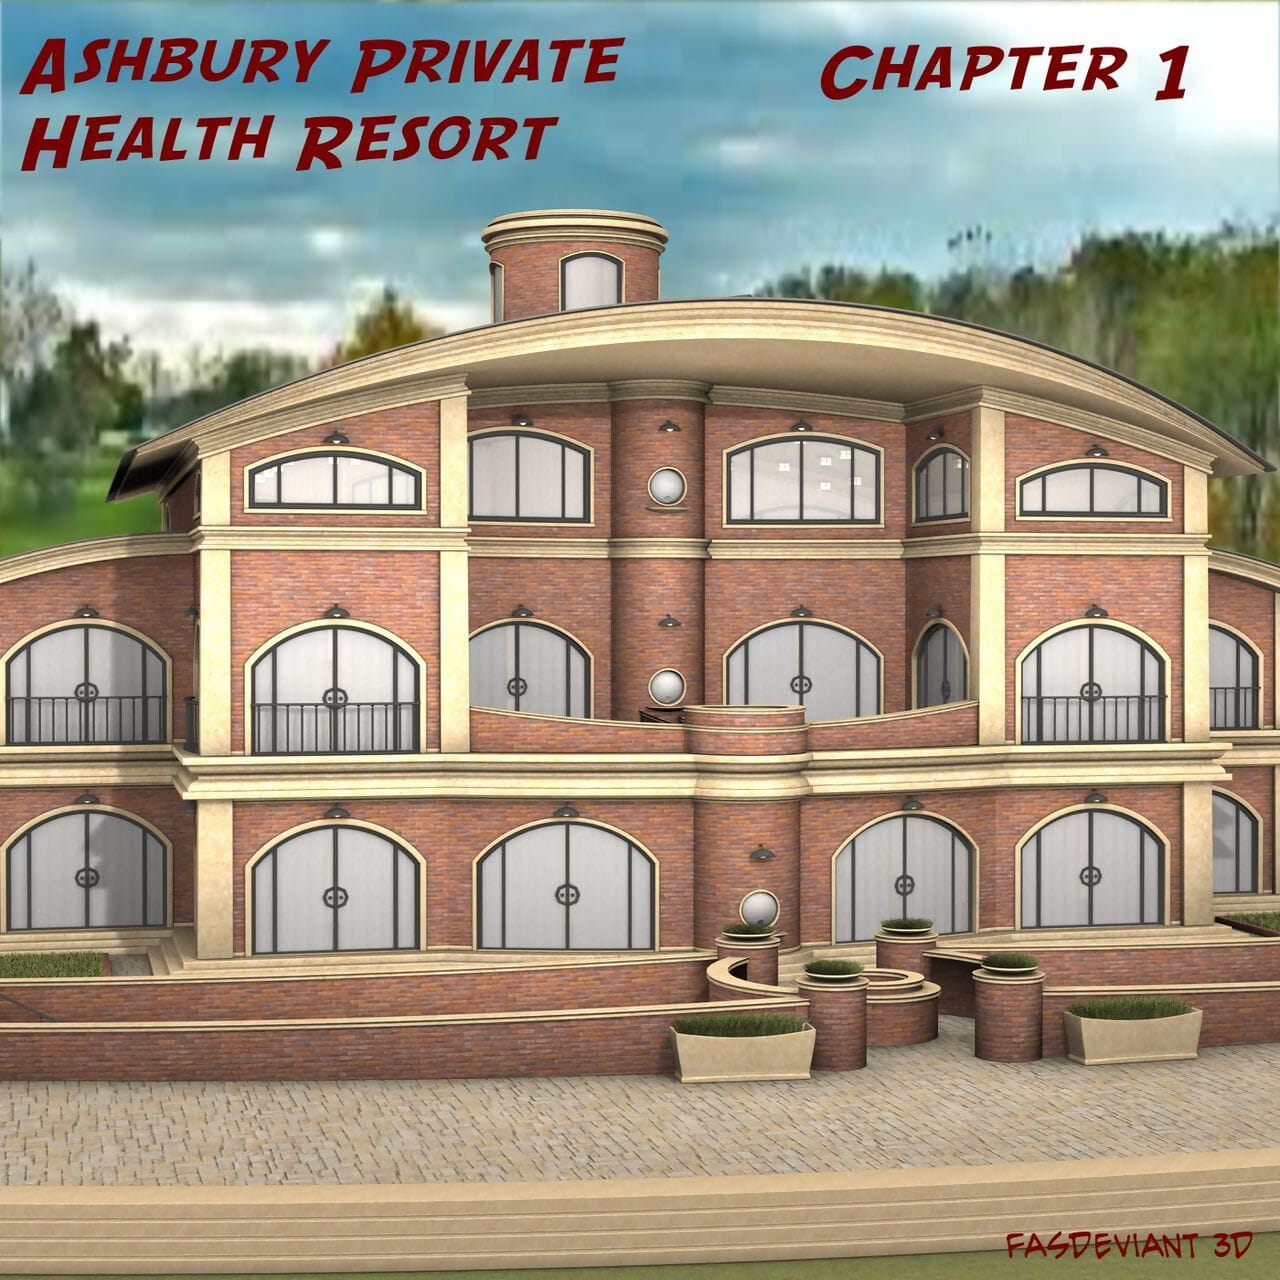 फासदेवींत ashbury निजी स्वास्थ्य सहारा अध्याय 1 page 1